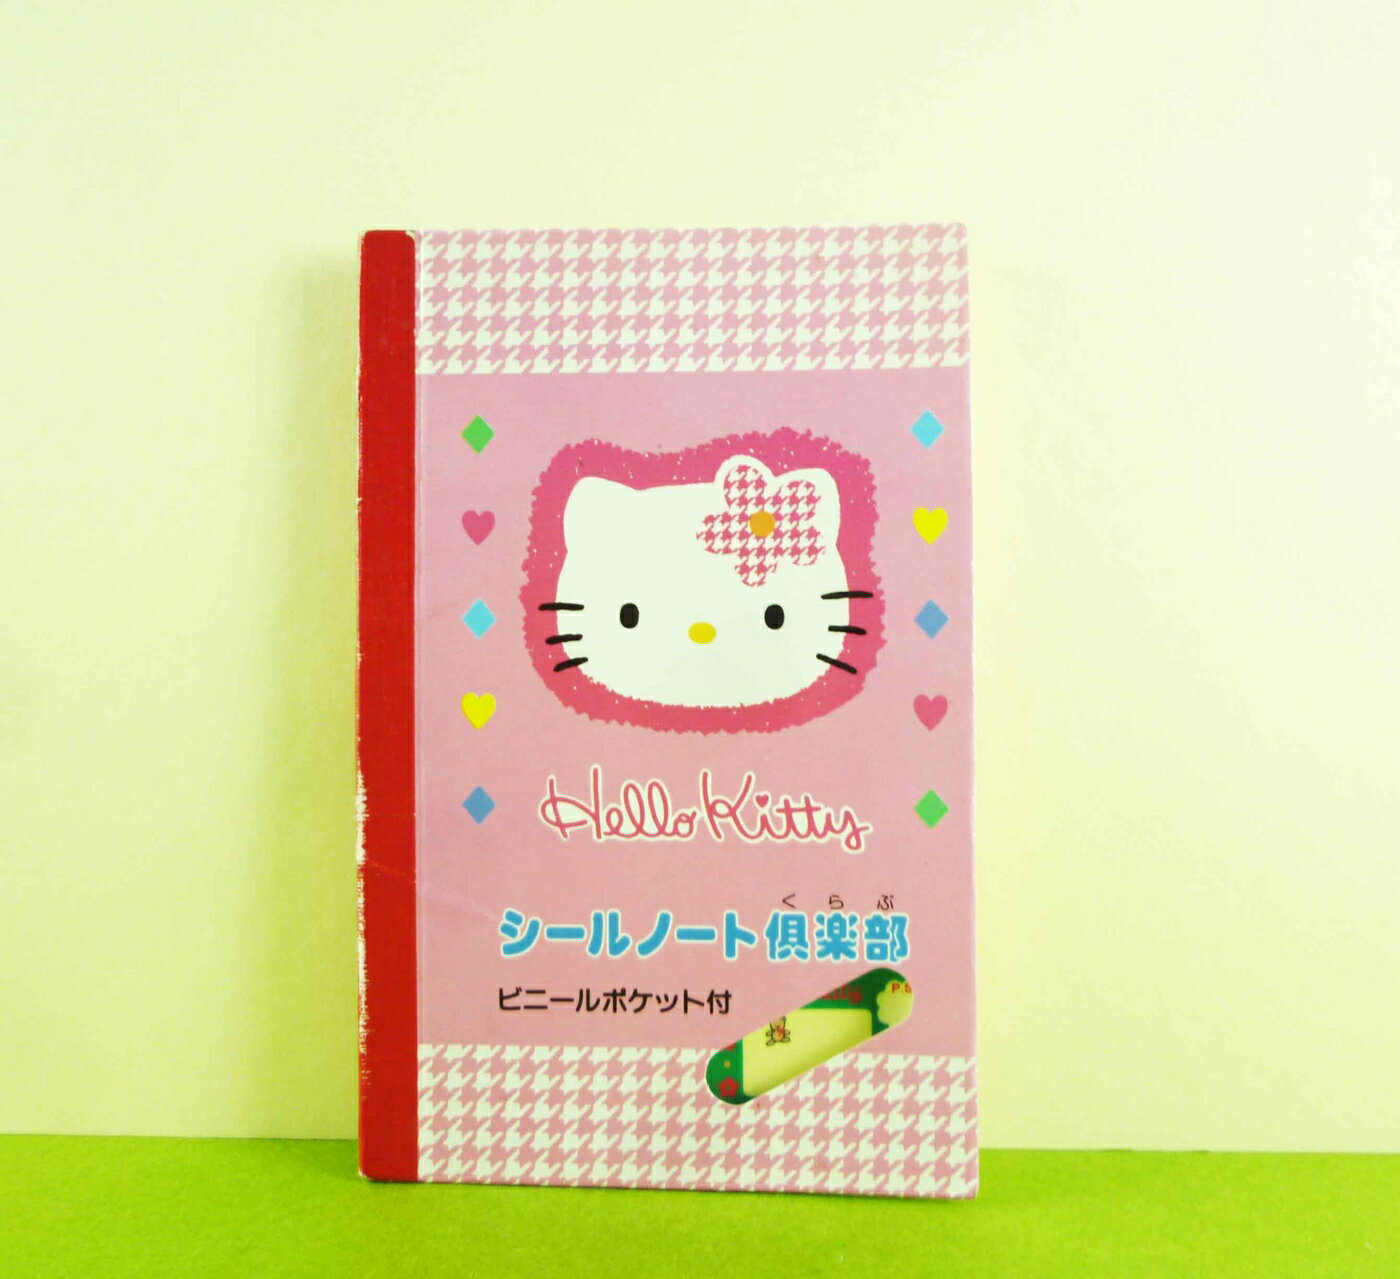 【震撼精品百貨】Hello Kitty 凱蒂貓 貼紙本 粉大頭【共1款】*31427 震撼日式精品百貨